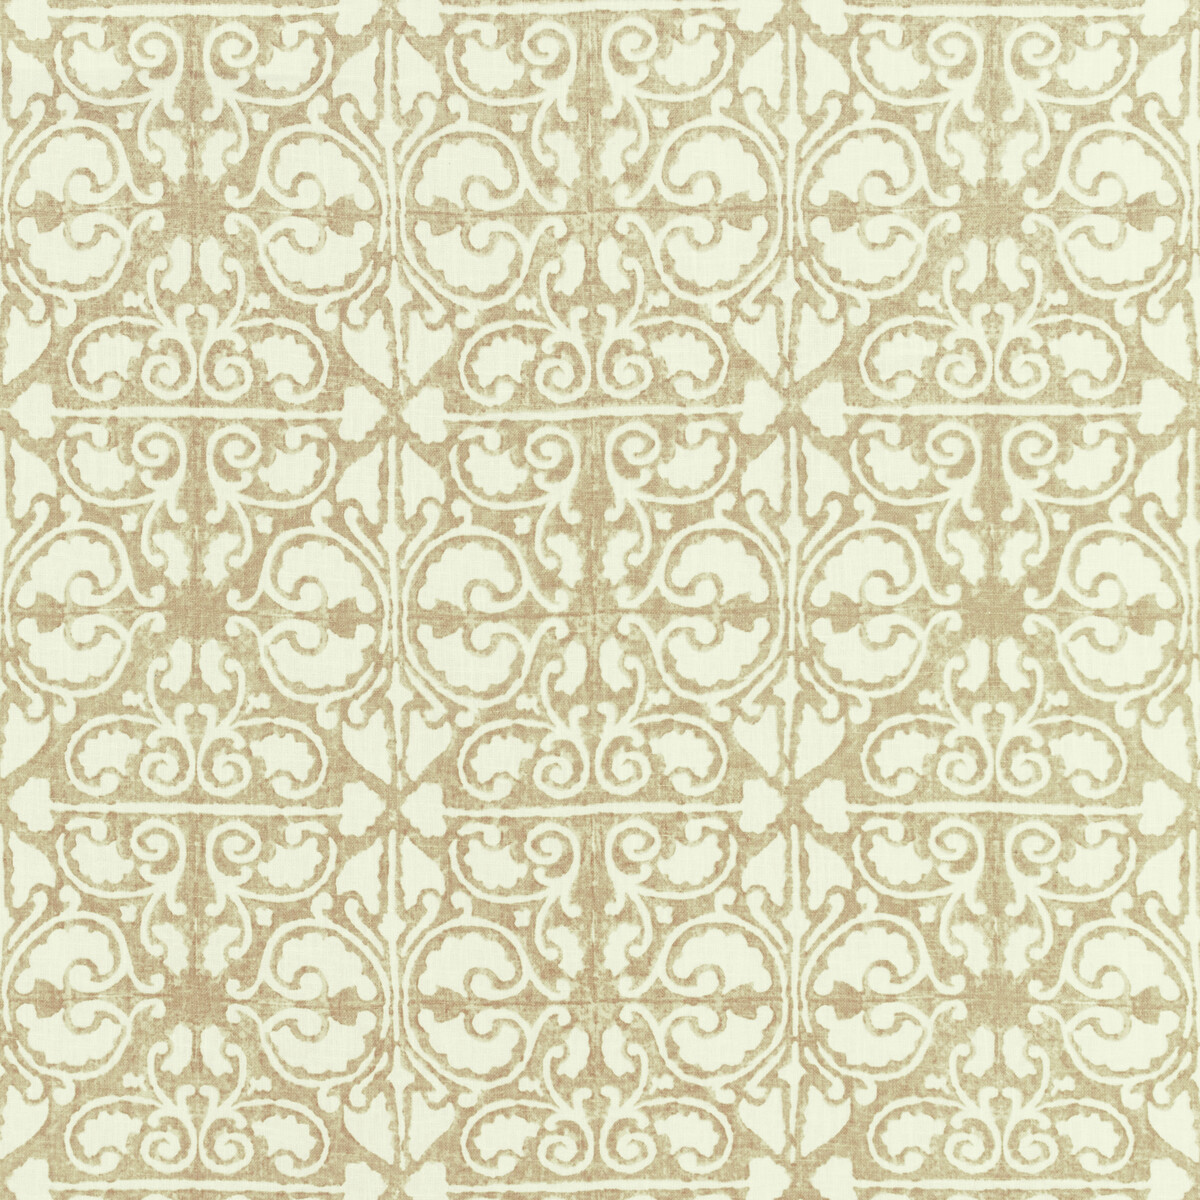 Kravet Basics Agra Tile.16.0 Kravet Basics Multipurpose Fabric in Agra Tile-16/Beige/White